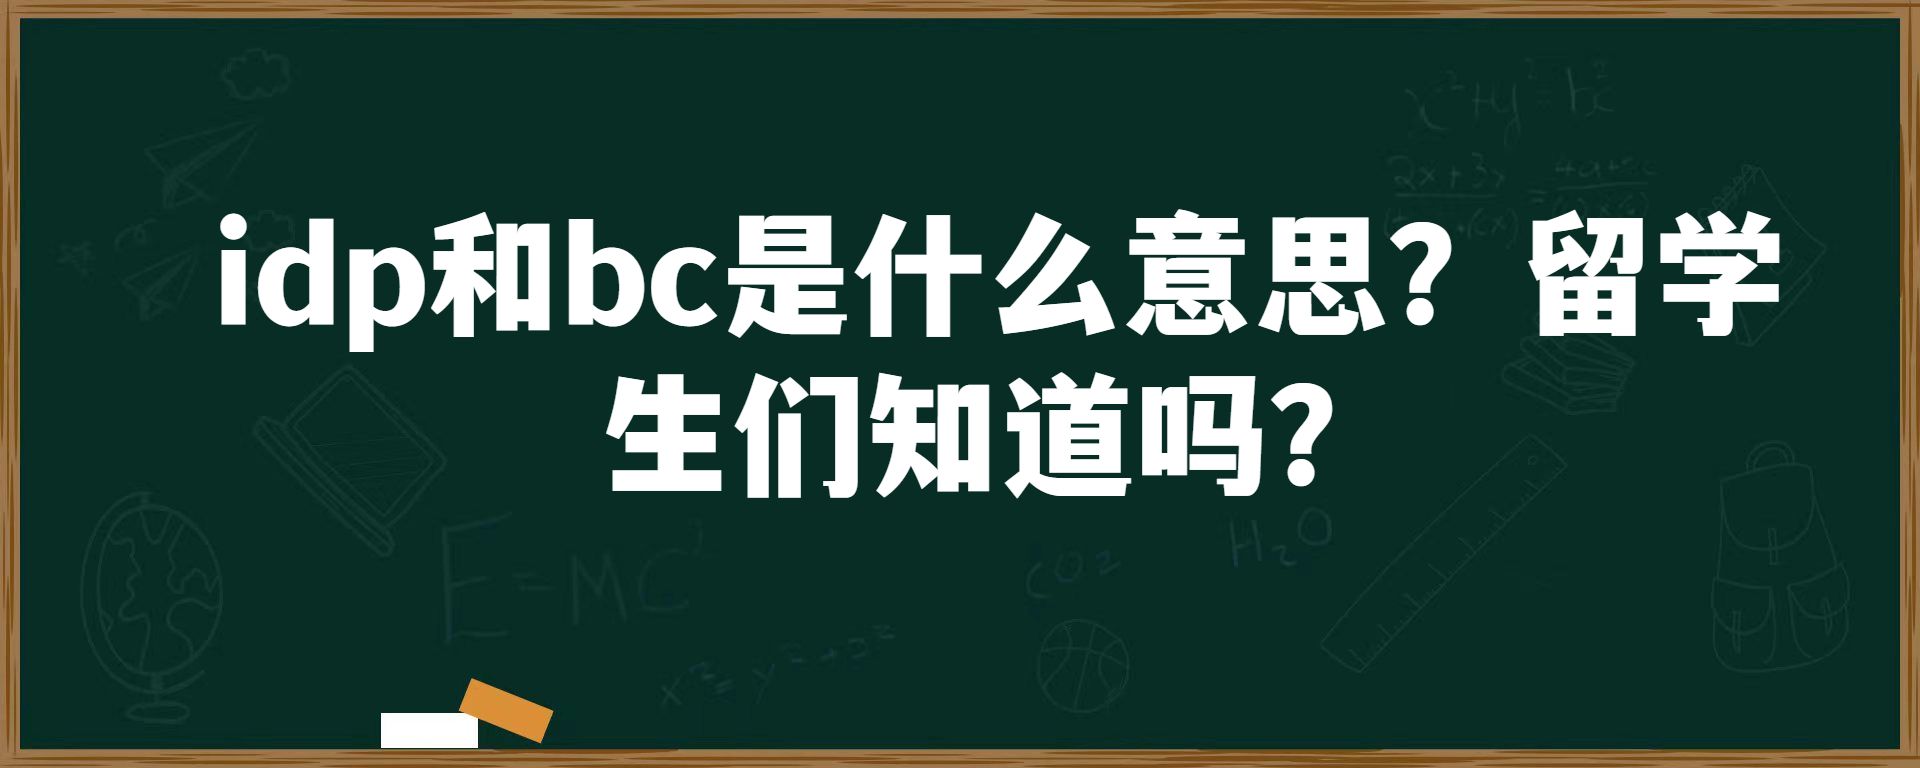 idp和bc是什么意思？留学生们知道吗？